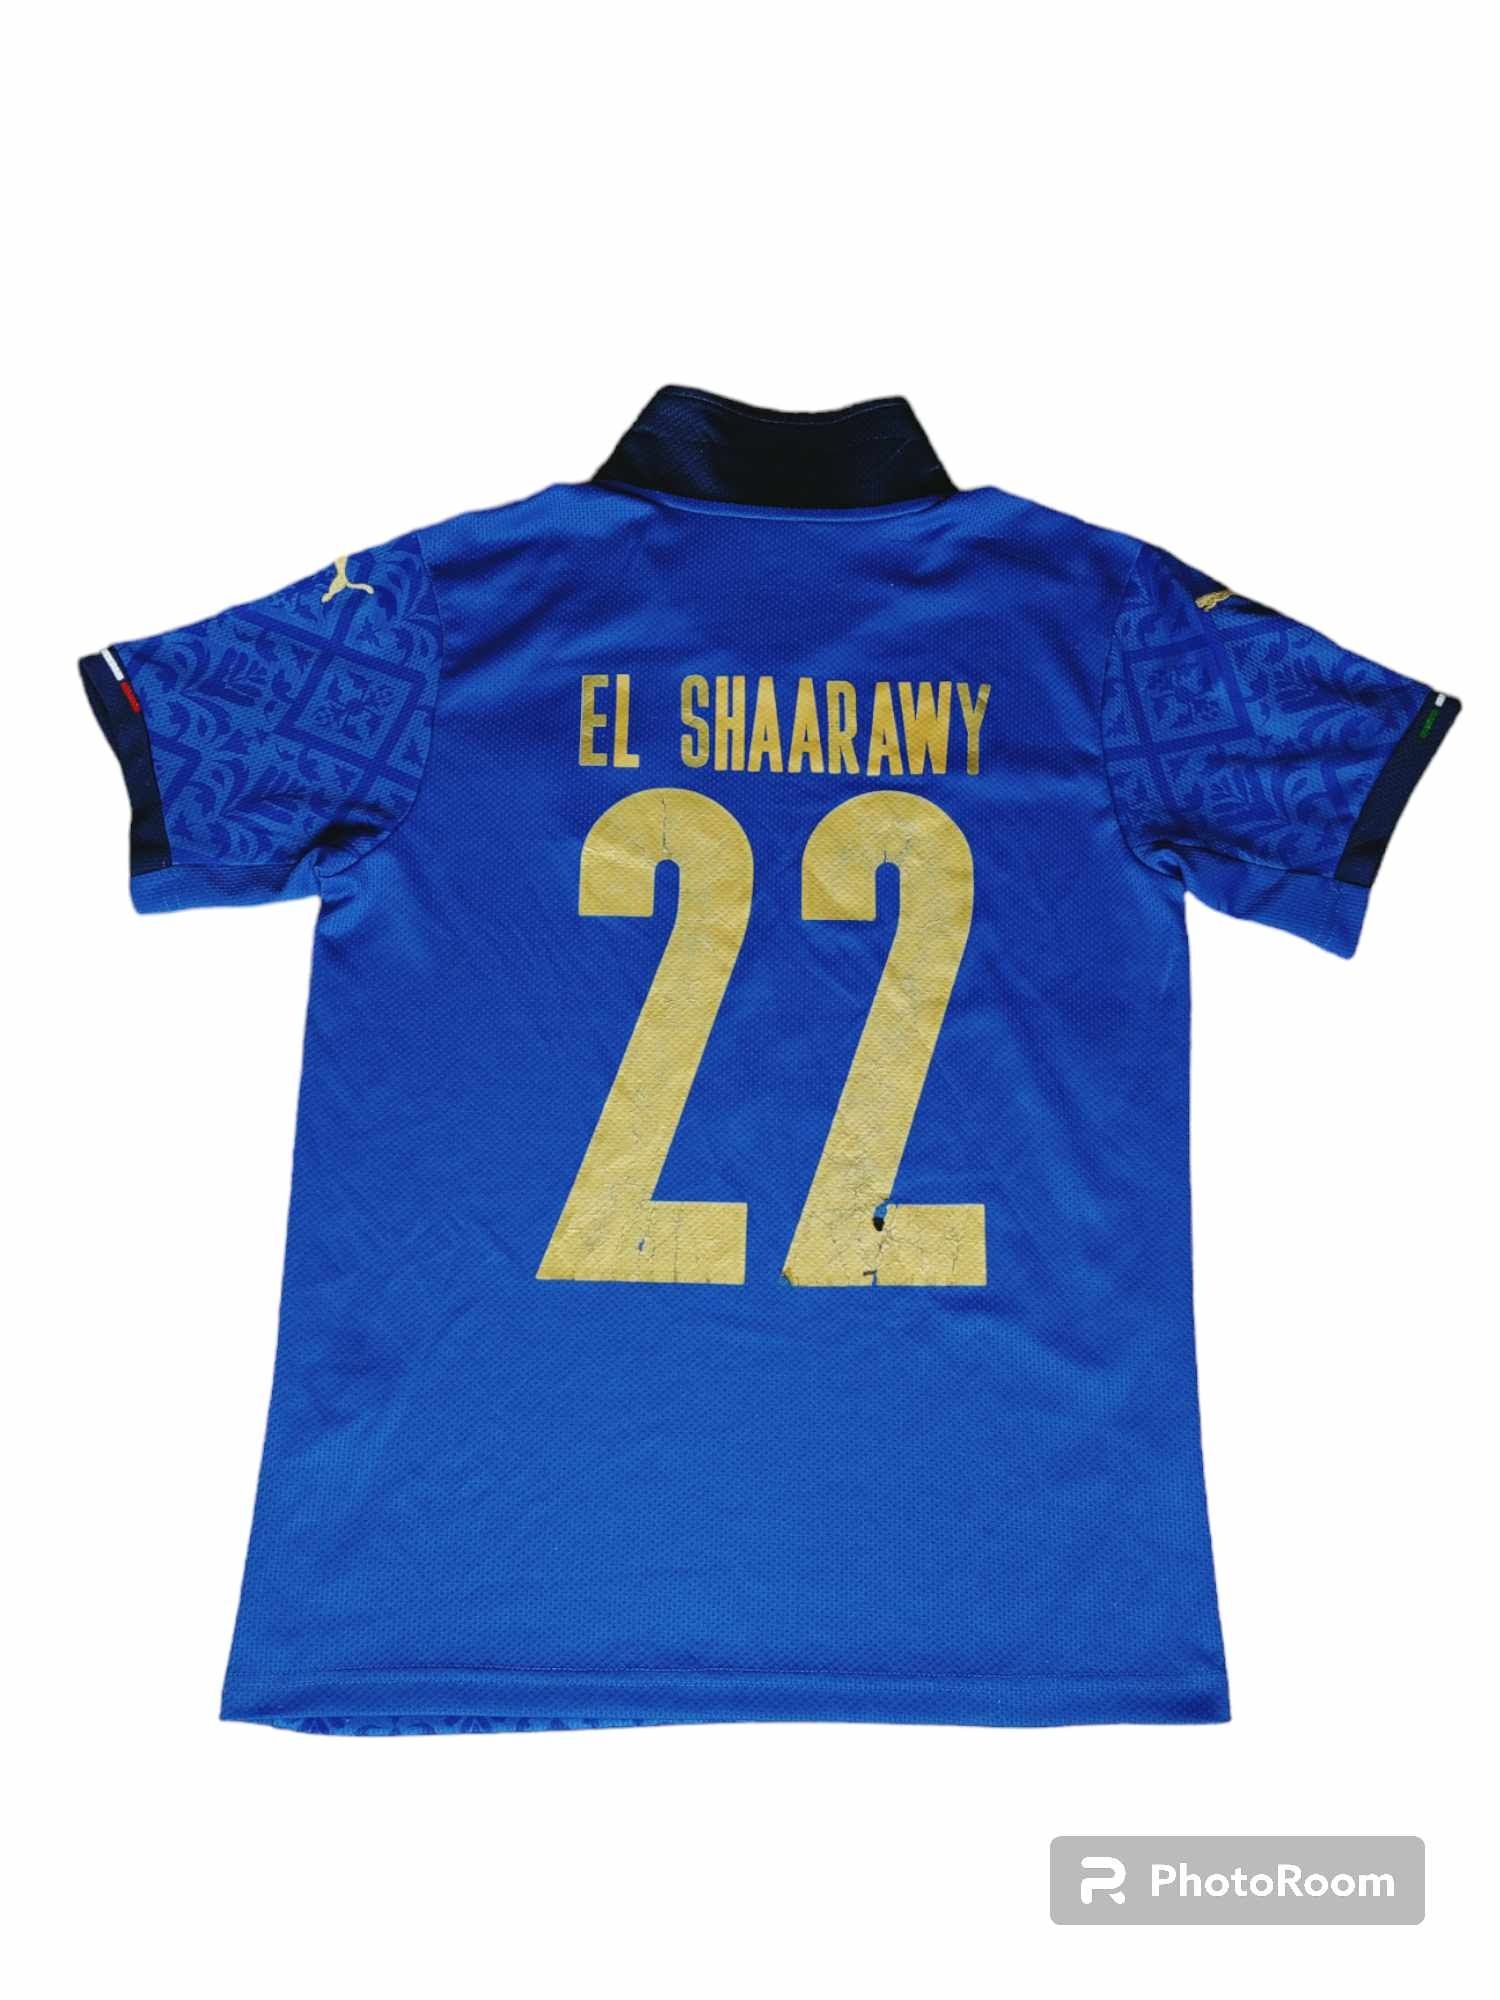 Koszulka Włoch Puma El Shaarawy Rozmiar M Reprezentacji Włoch